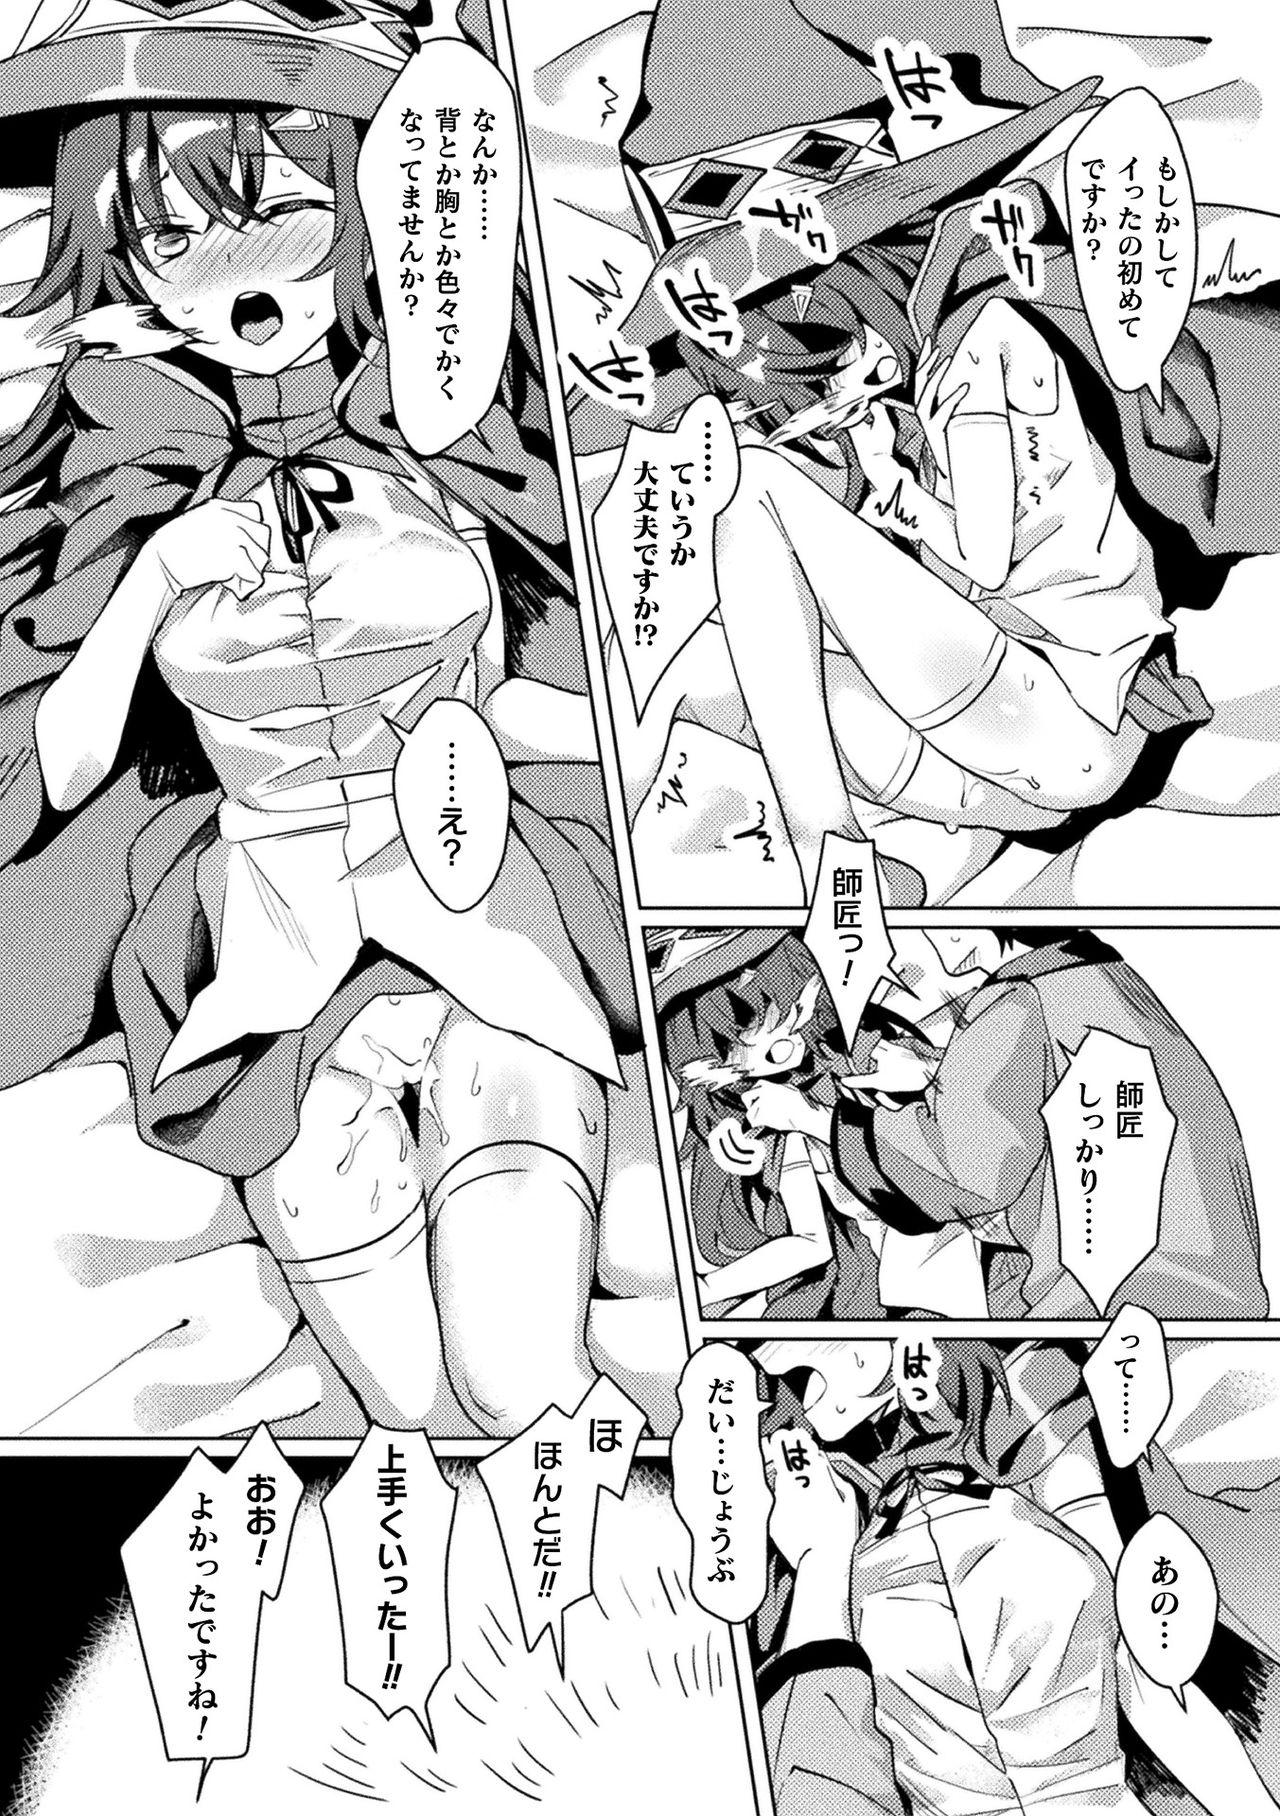 [Anthology] Bessatsu Comic Unreal Ponkotsu Fantasy Heroine H ~Doji o Funde Gyakuten Saretari Ero Trap ni Hamattari!?~ Vol. 1 [Digital] 30